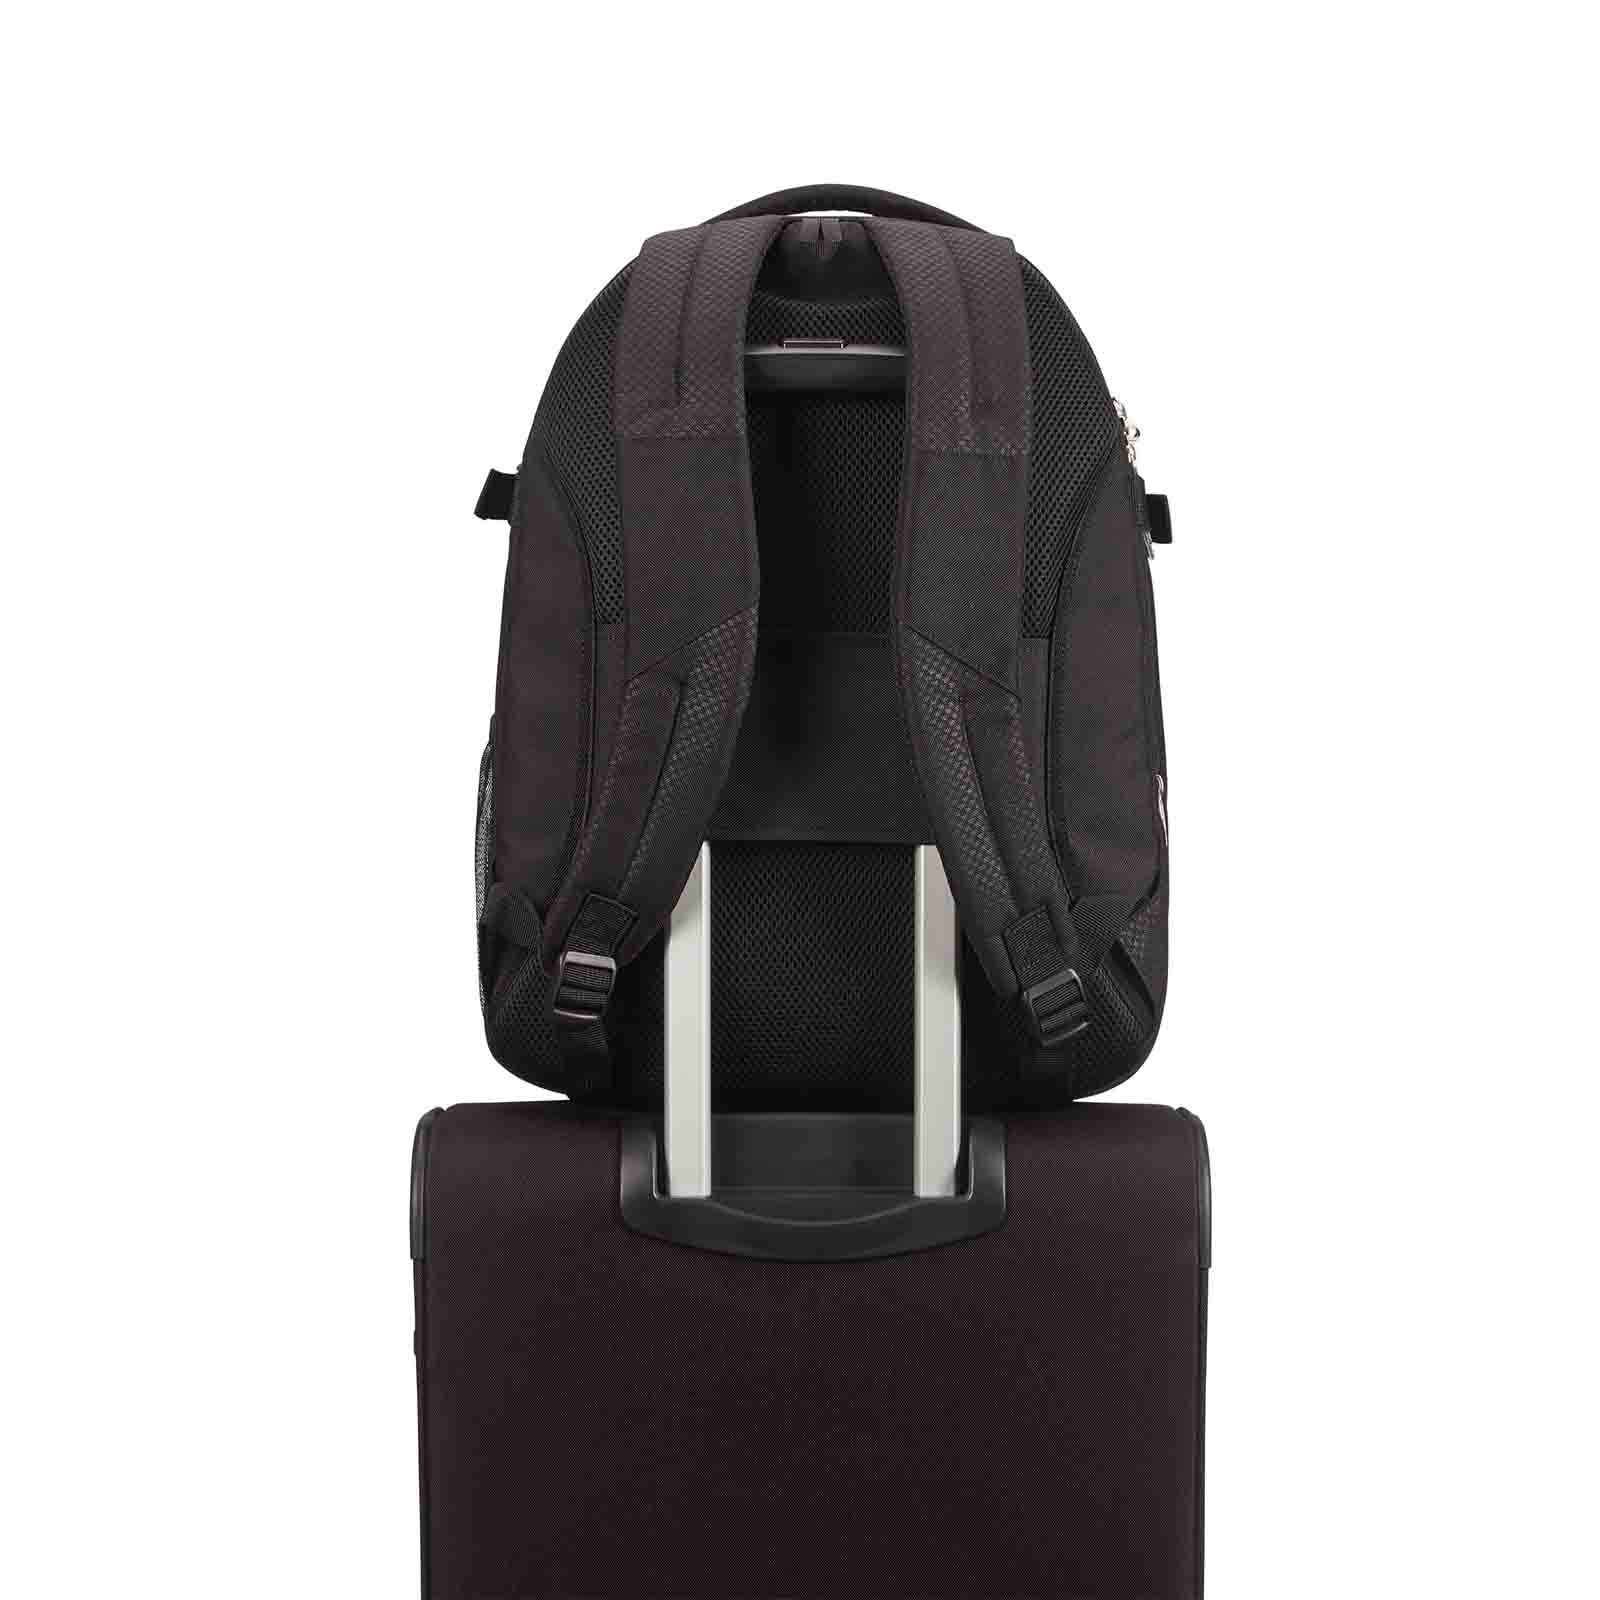 Samsonite-Sonora-15-Inch-Laptop-Backpack-Black-Smart-Sleeve